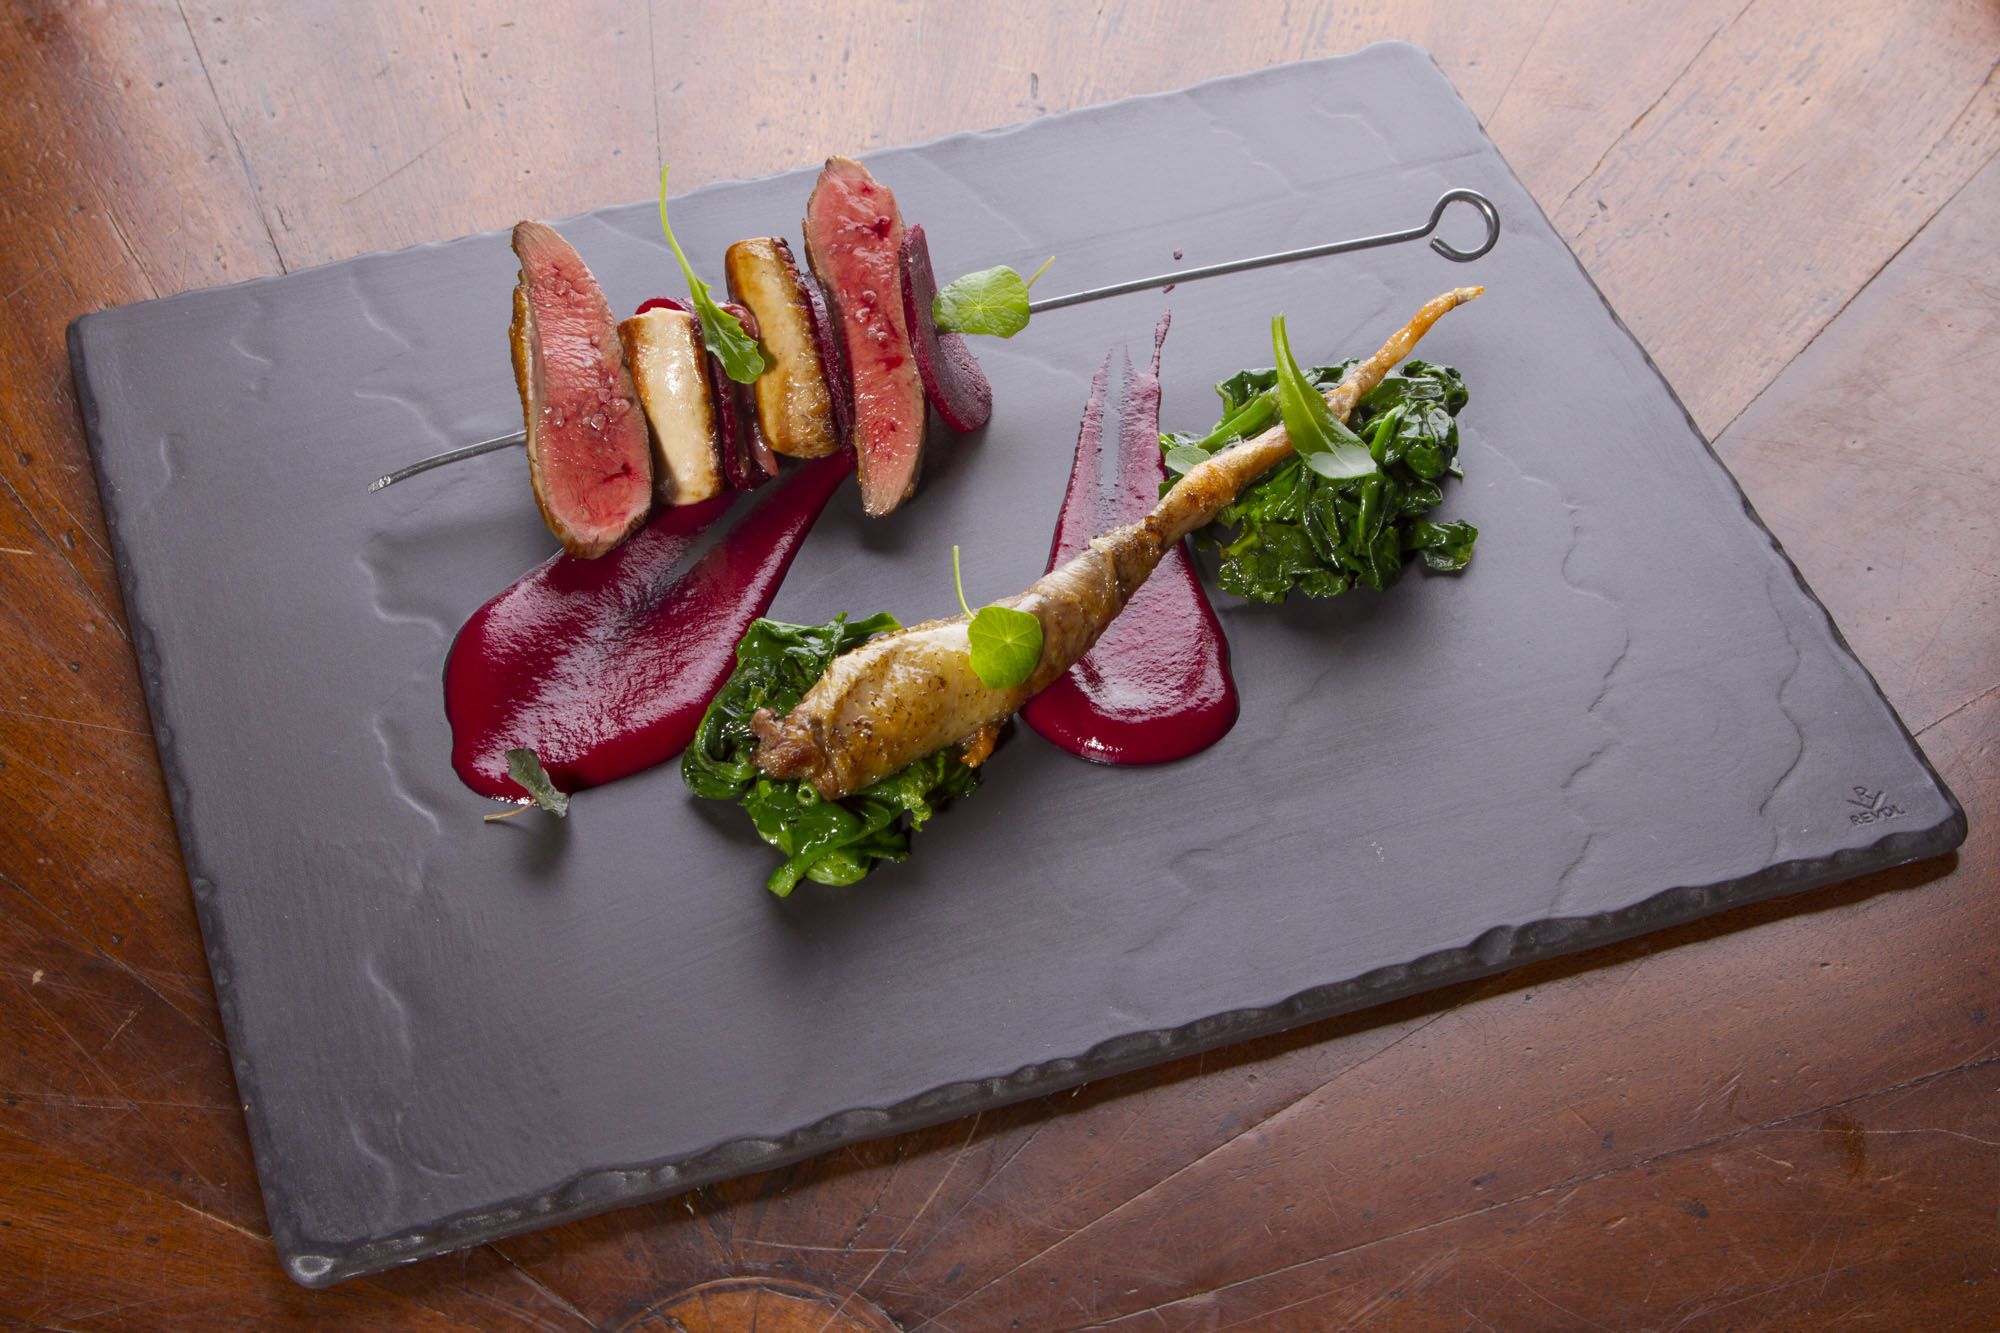 Piccione allo spiedo, foie gras, spinaci e rapa rossa alla grappa